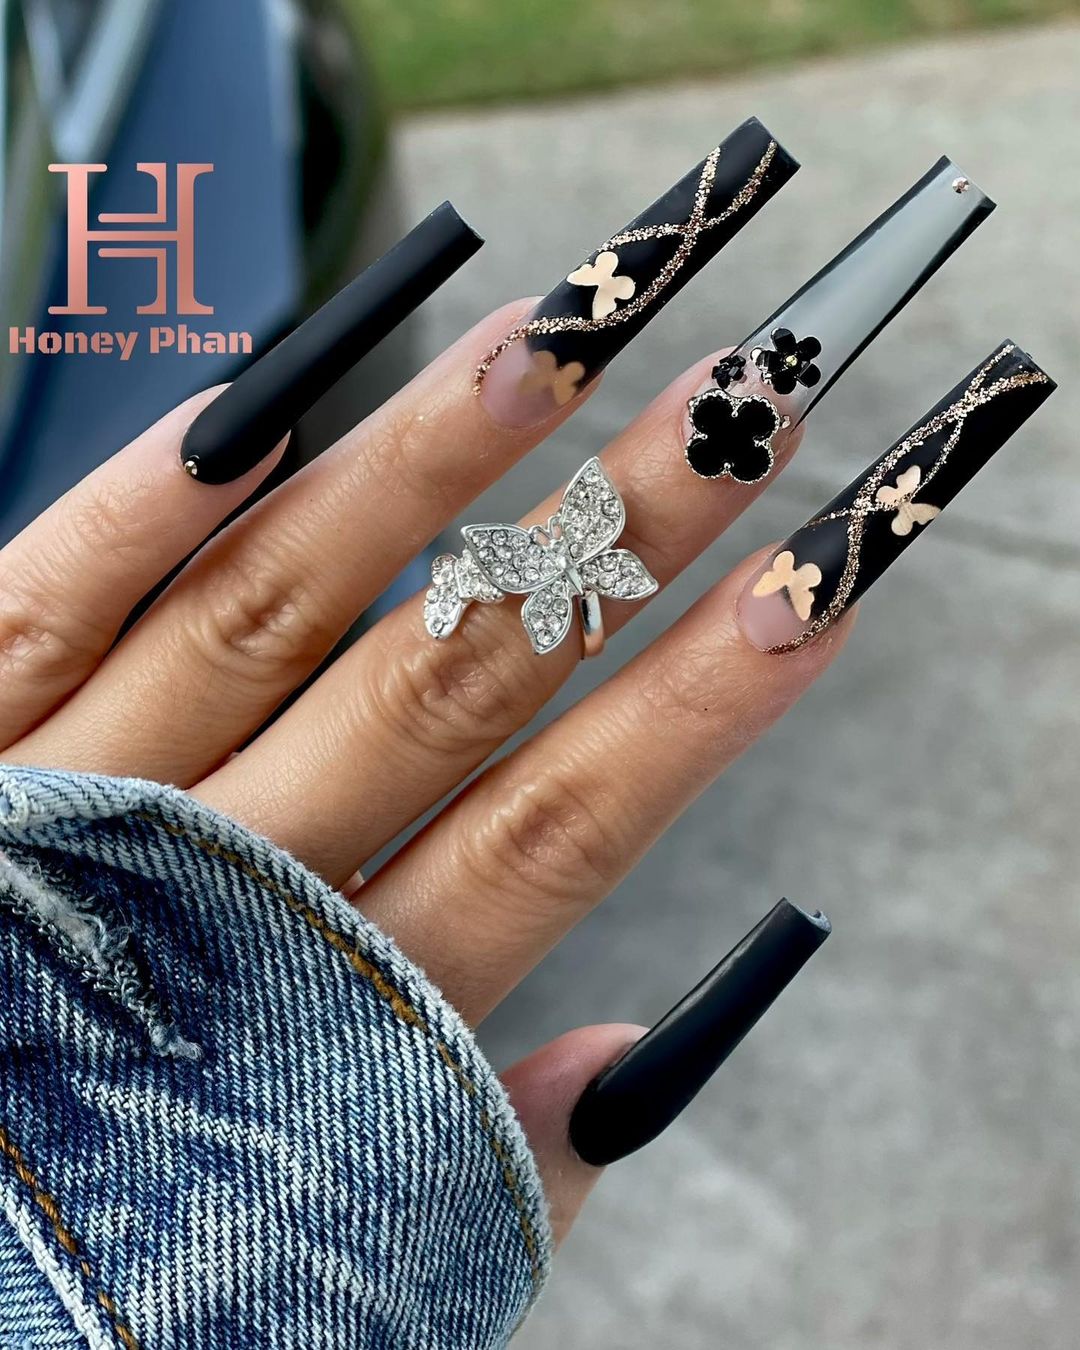 Acryl zwarte nagels met gouden vlinders